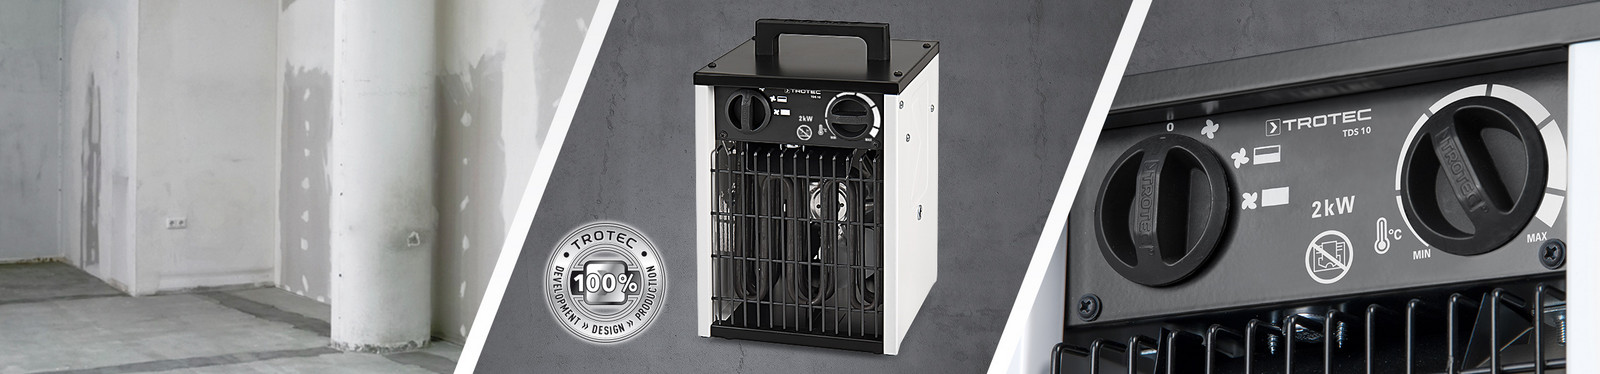 Electric heater fan TDS 10